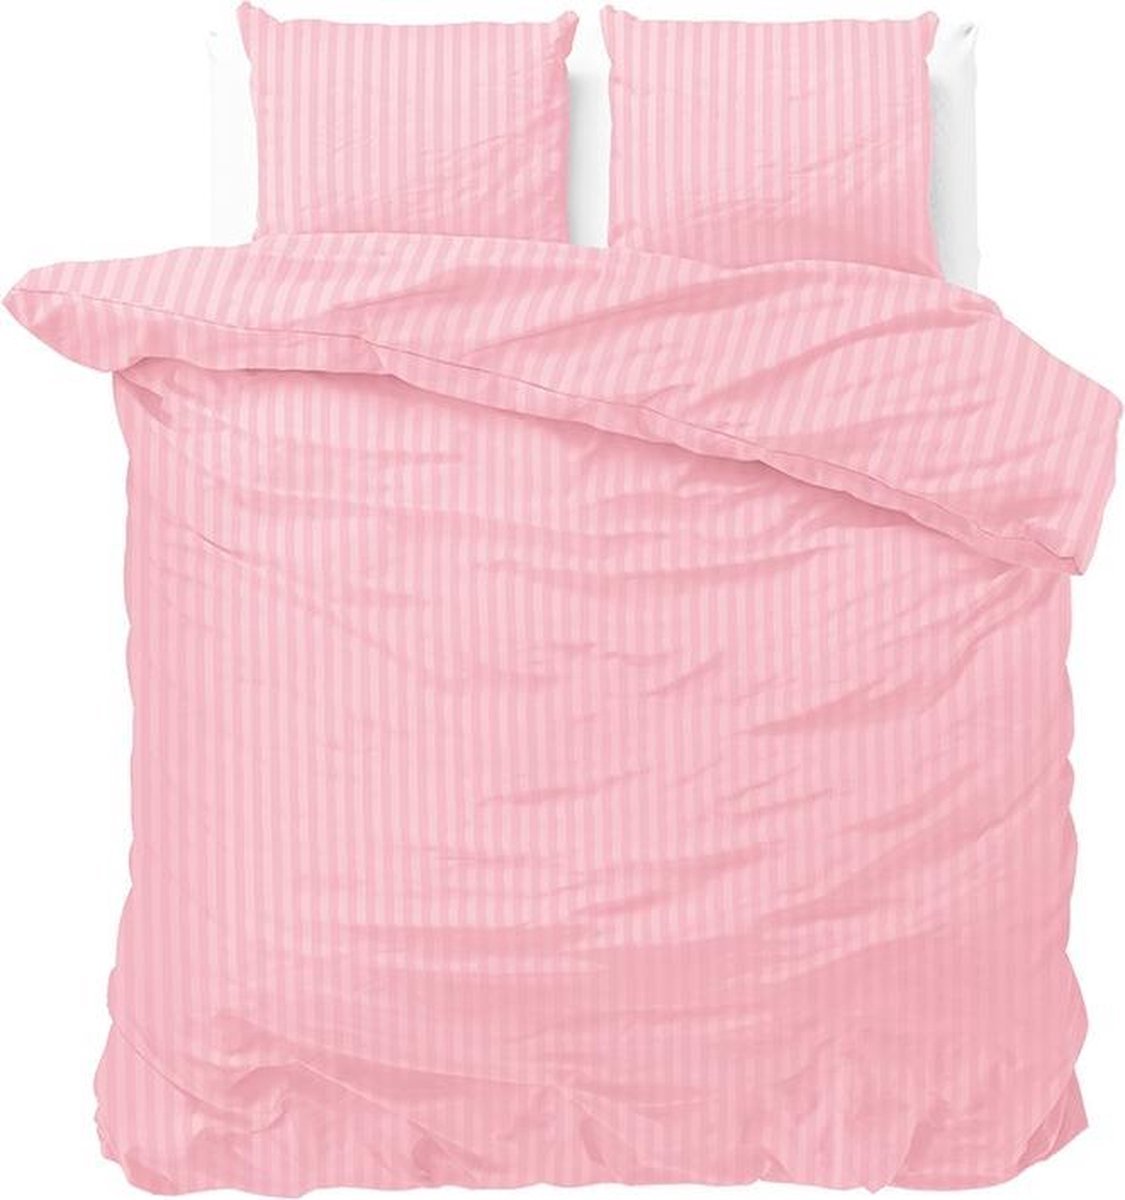 Luxe dekbedovertrek Stripes roze - 240x200/220 (lits-jumeaux) - zacht en fijne kwaliteit - stijlvolle uitstraling - met handige drukknopen